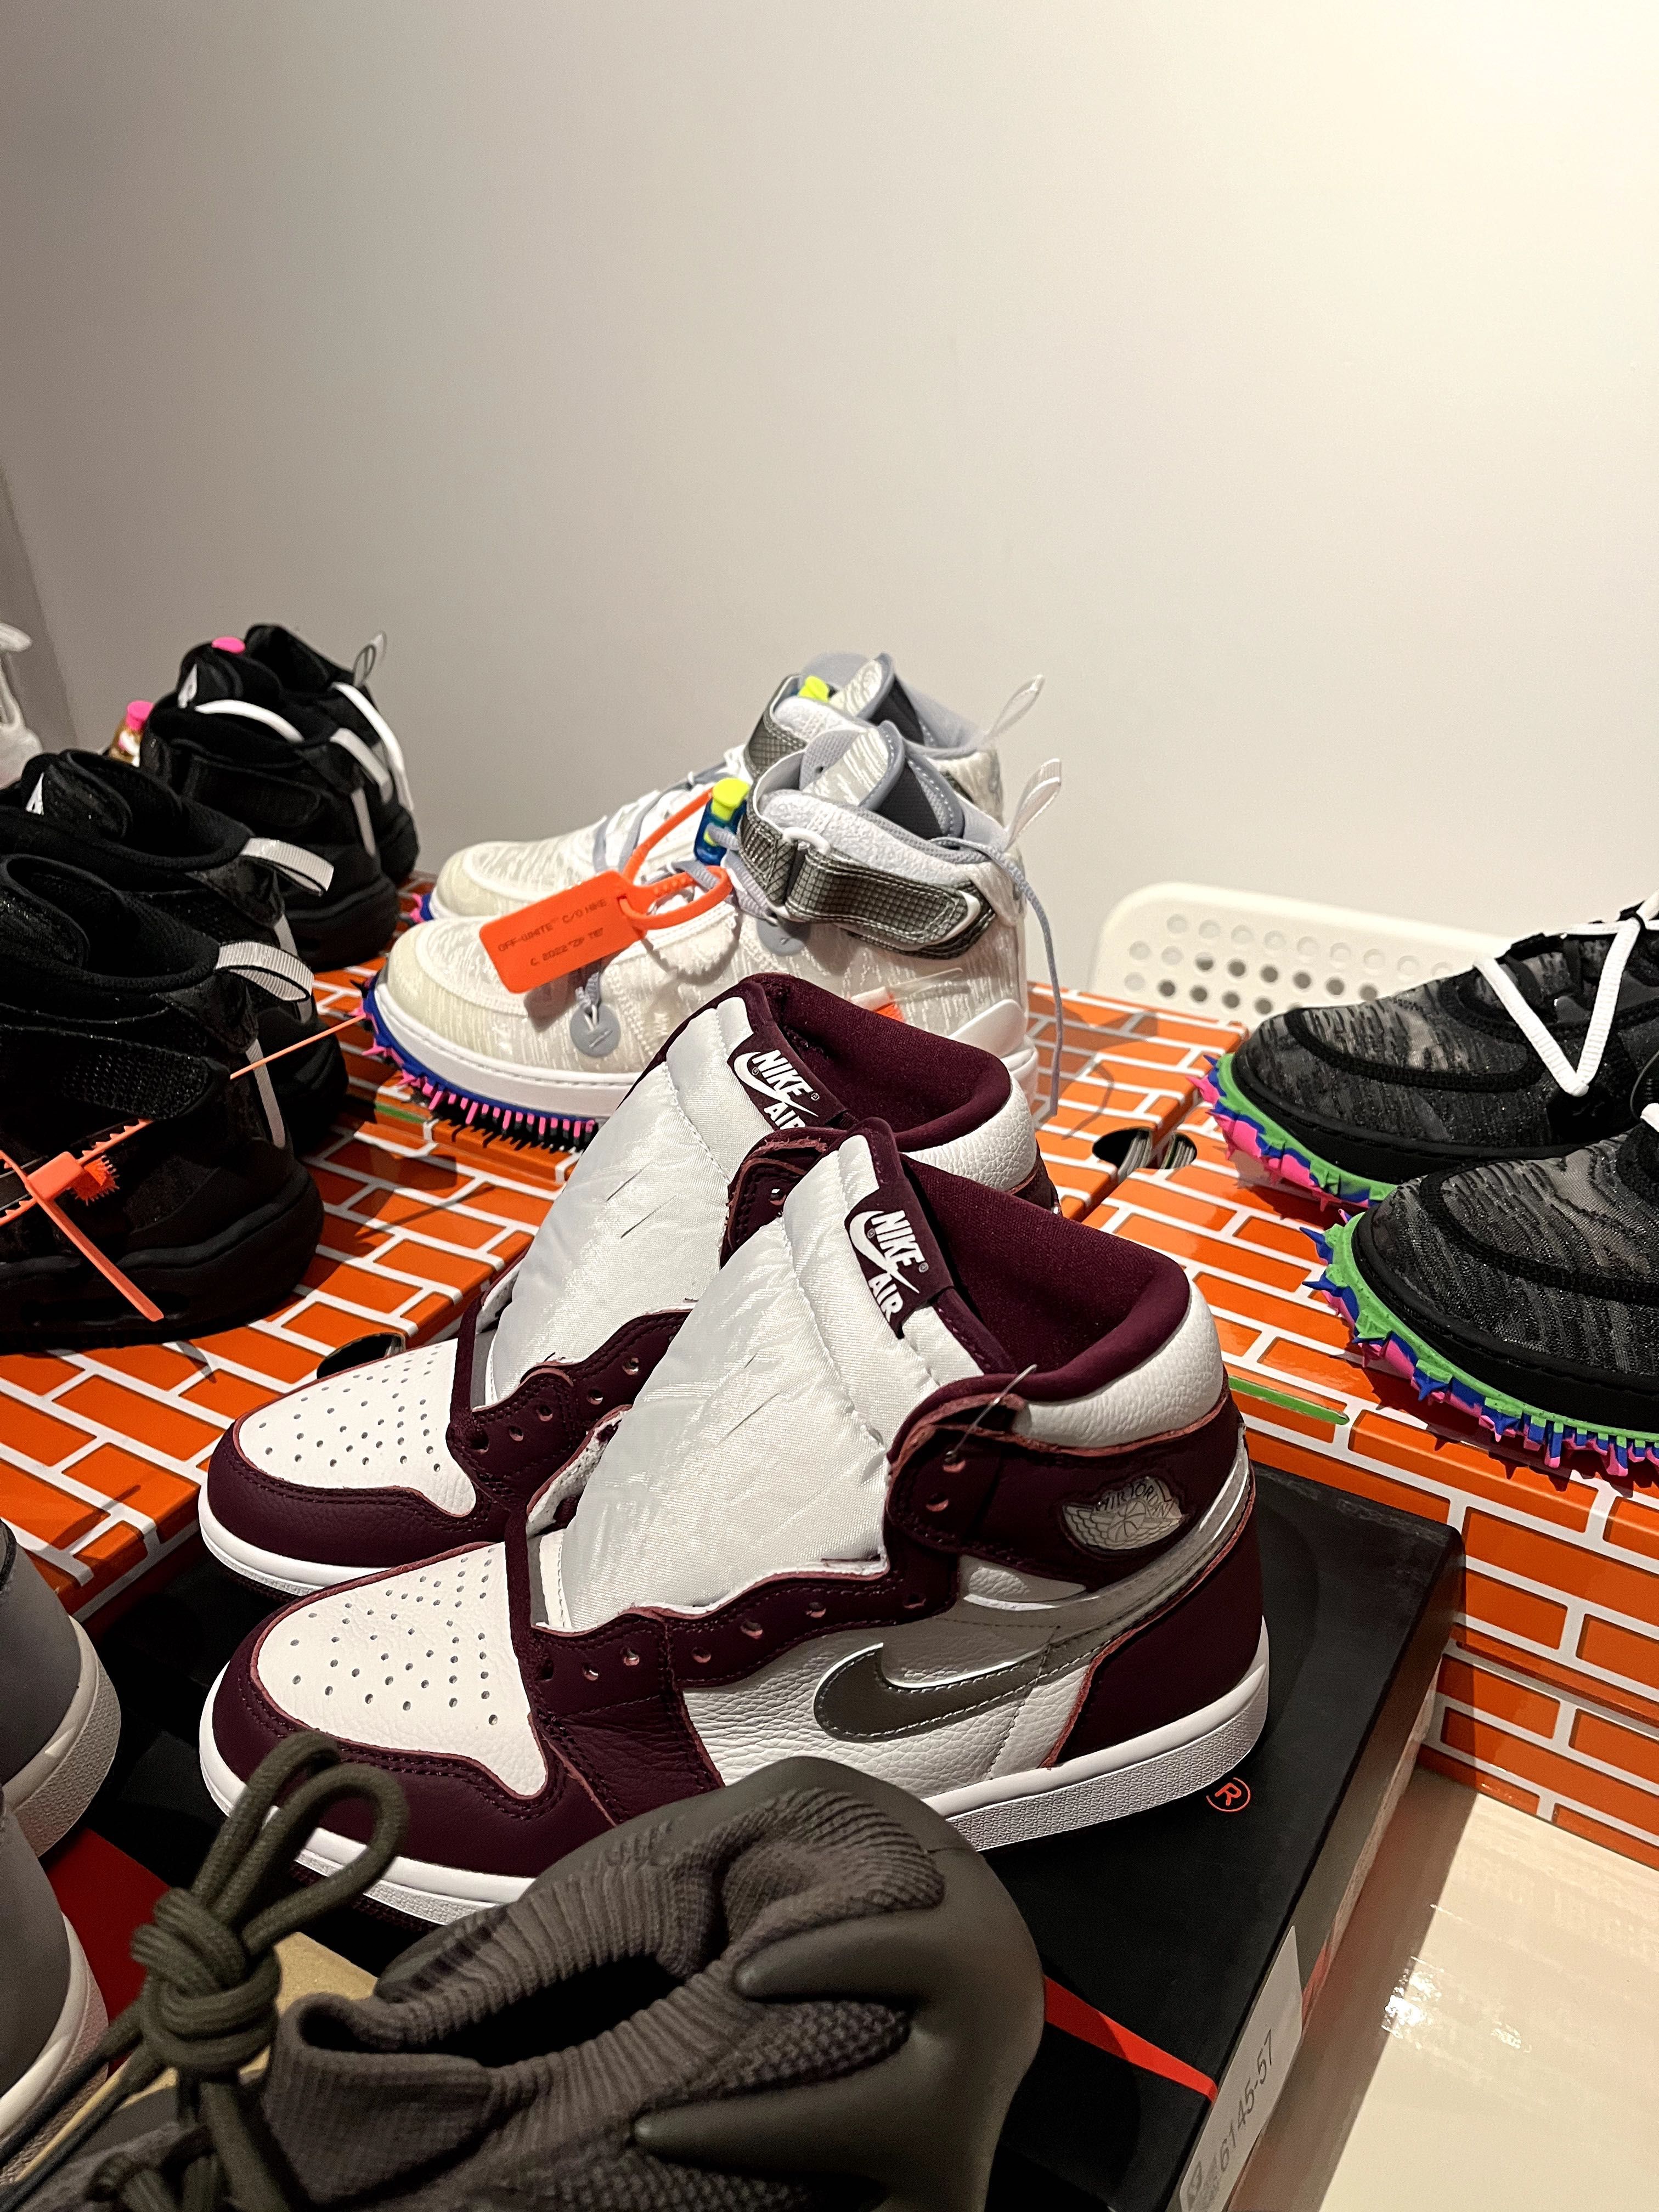 Nike Retro 1 / Travis Scott / Yeezy 450 / Air Jordan - marimi: 40 - 41